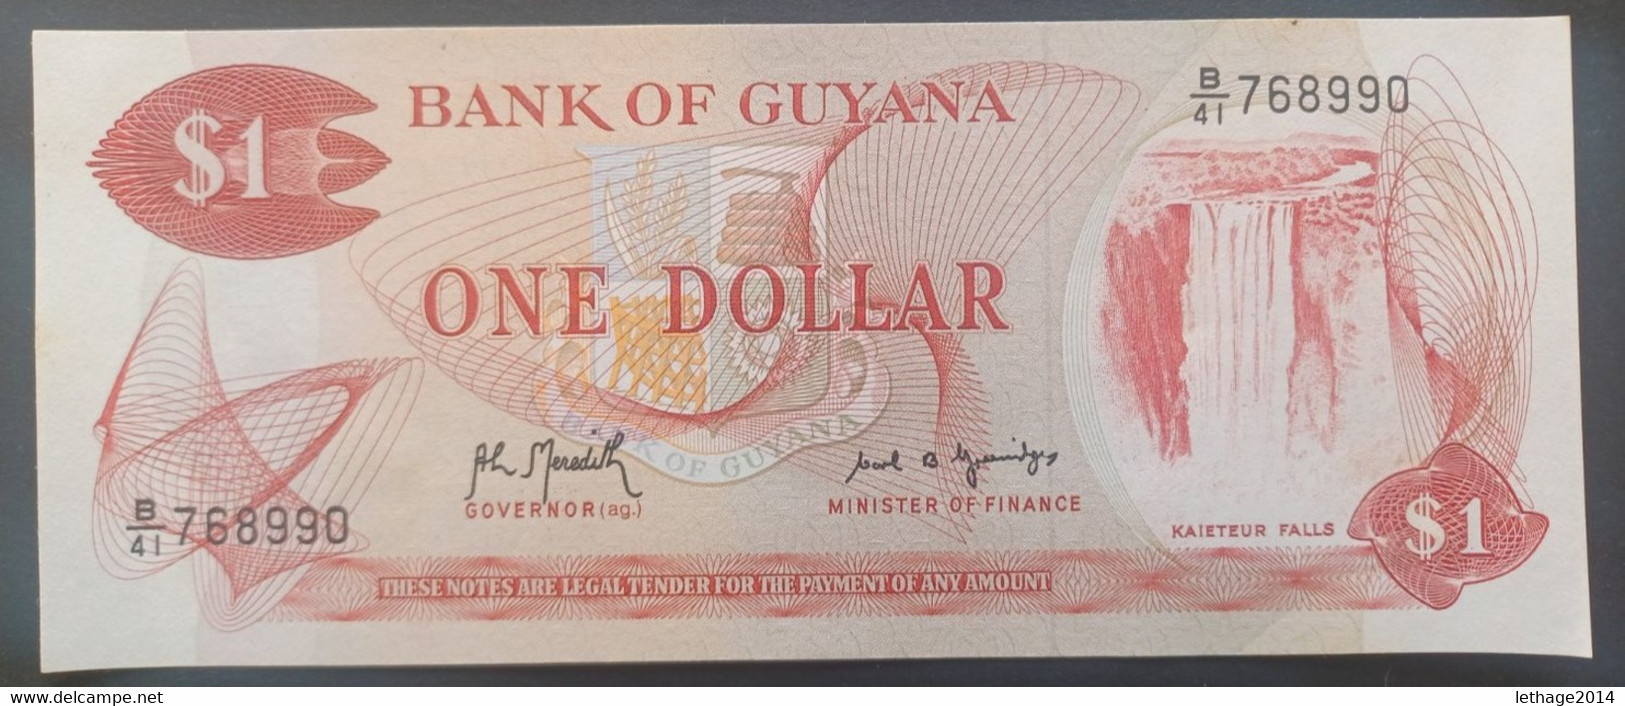 BANKNOTE GUYANA 1 DOLLARO 1990 UNCIRCULATED (RAFF.) - Guyana